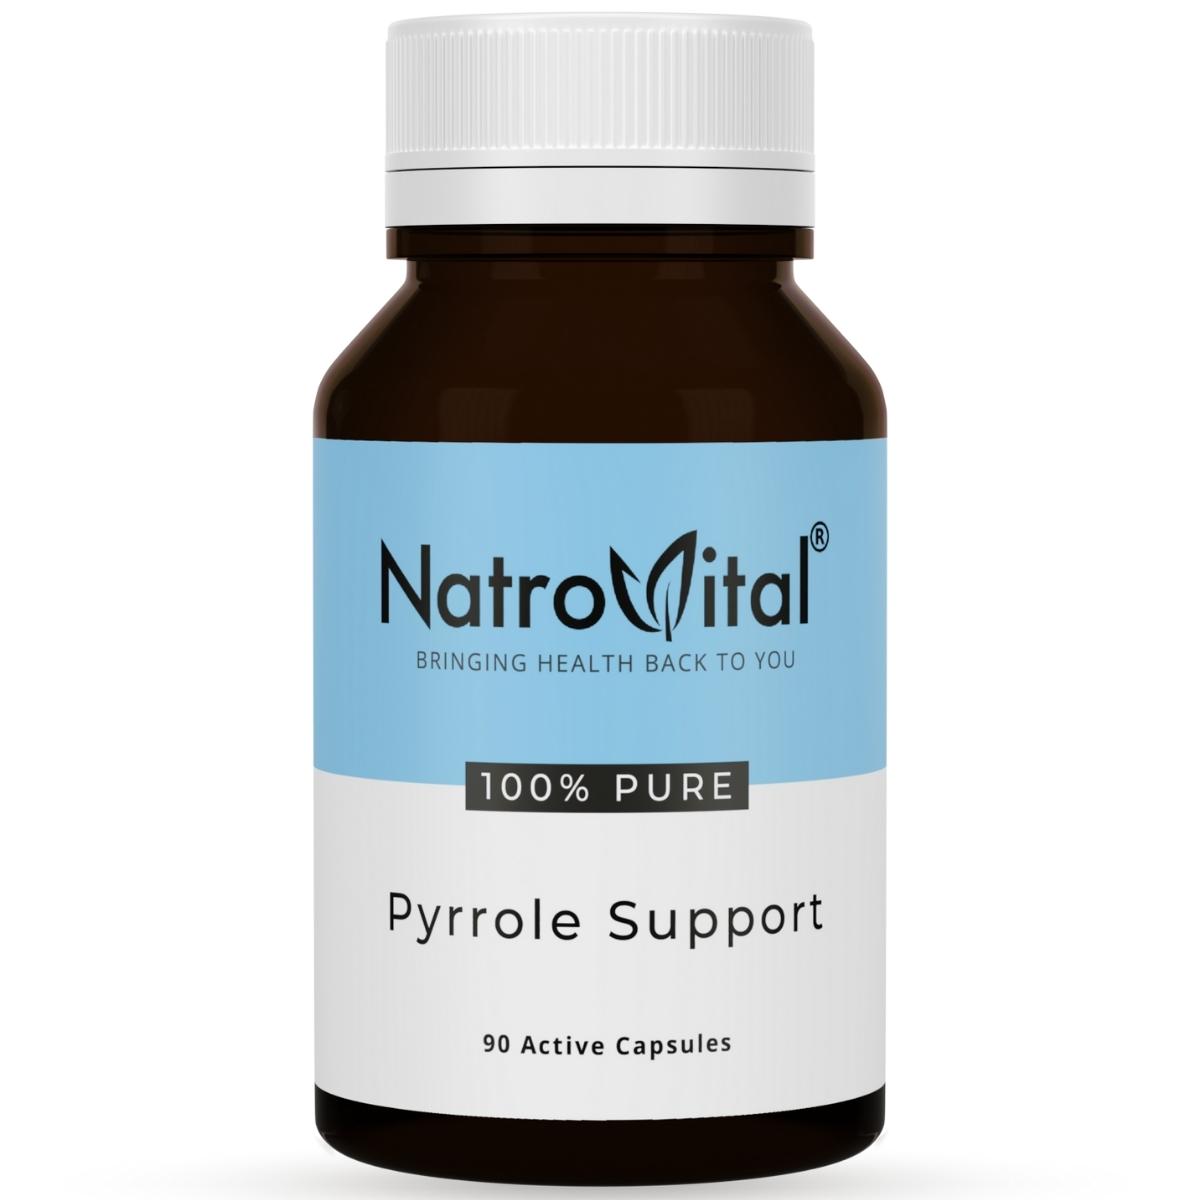 NatroVital Pyrrole Support